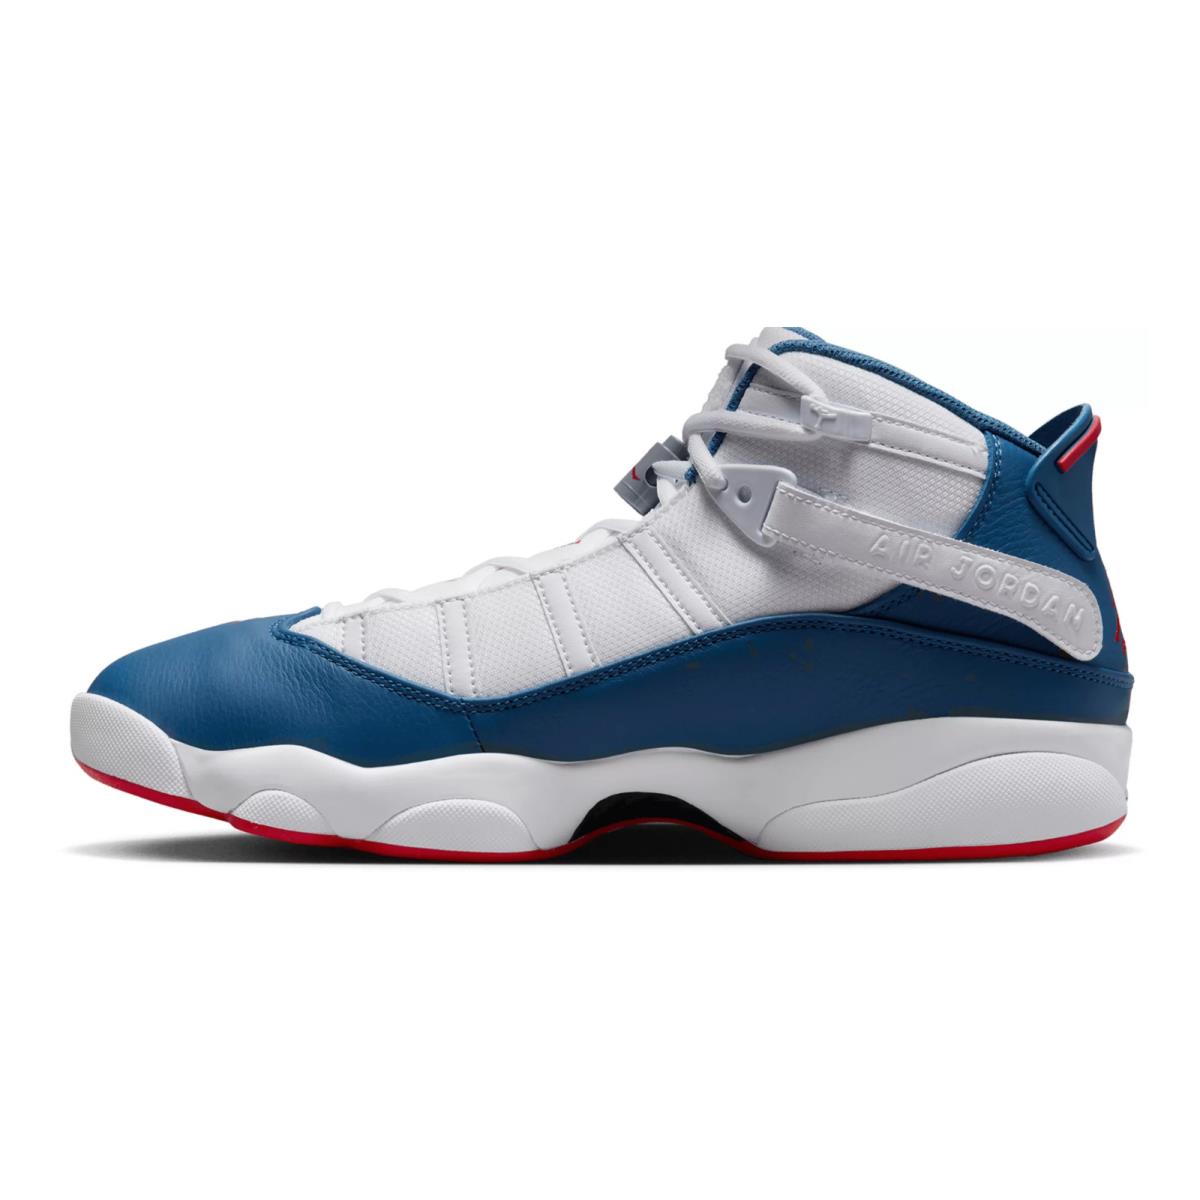 Nike Mens Jordan 6 Rings Basketball Shoes - White/University Red/Light Steel Grey/True Blue, Manufacturer: White/University Red/Light Steel Grey/True Blue